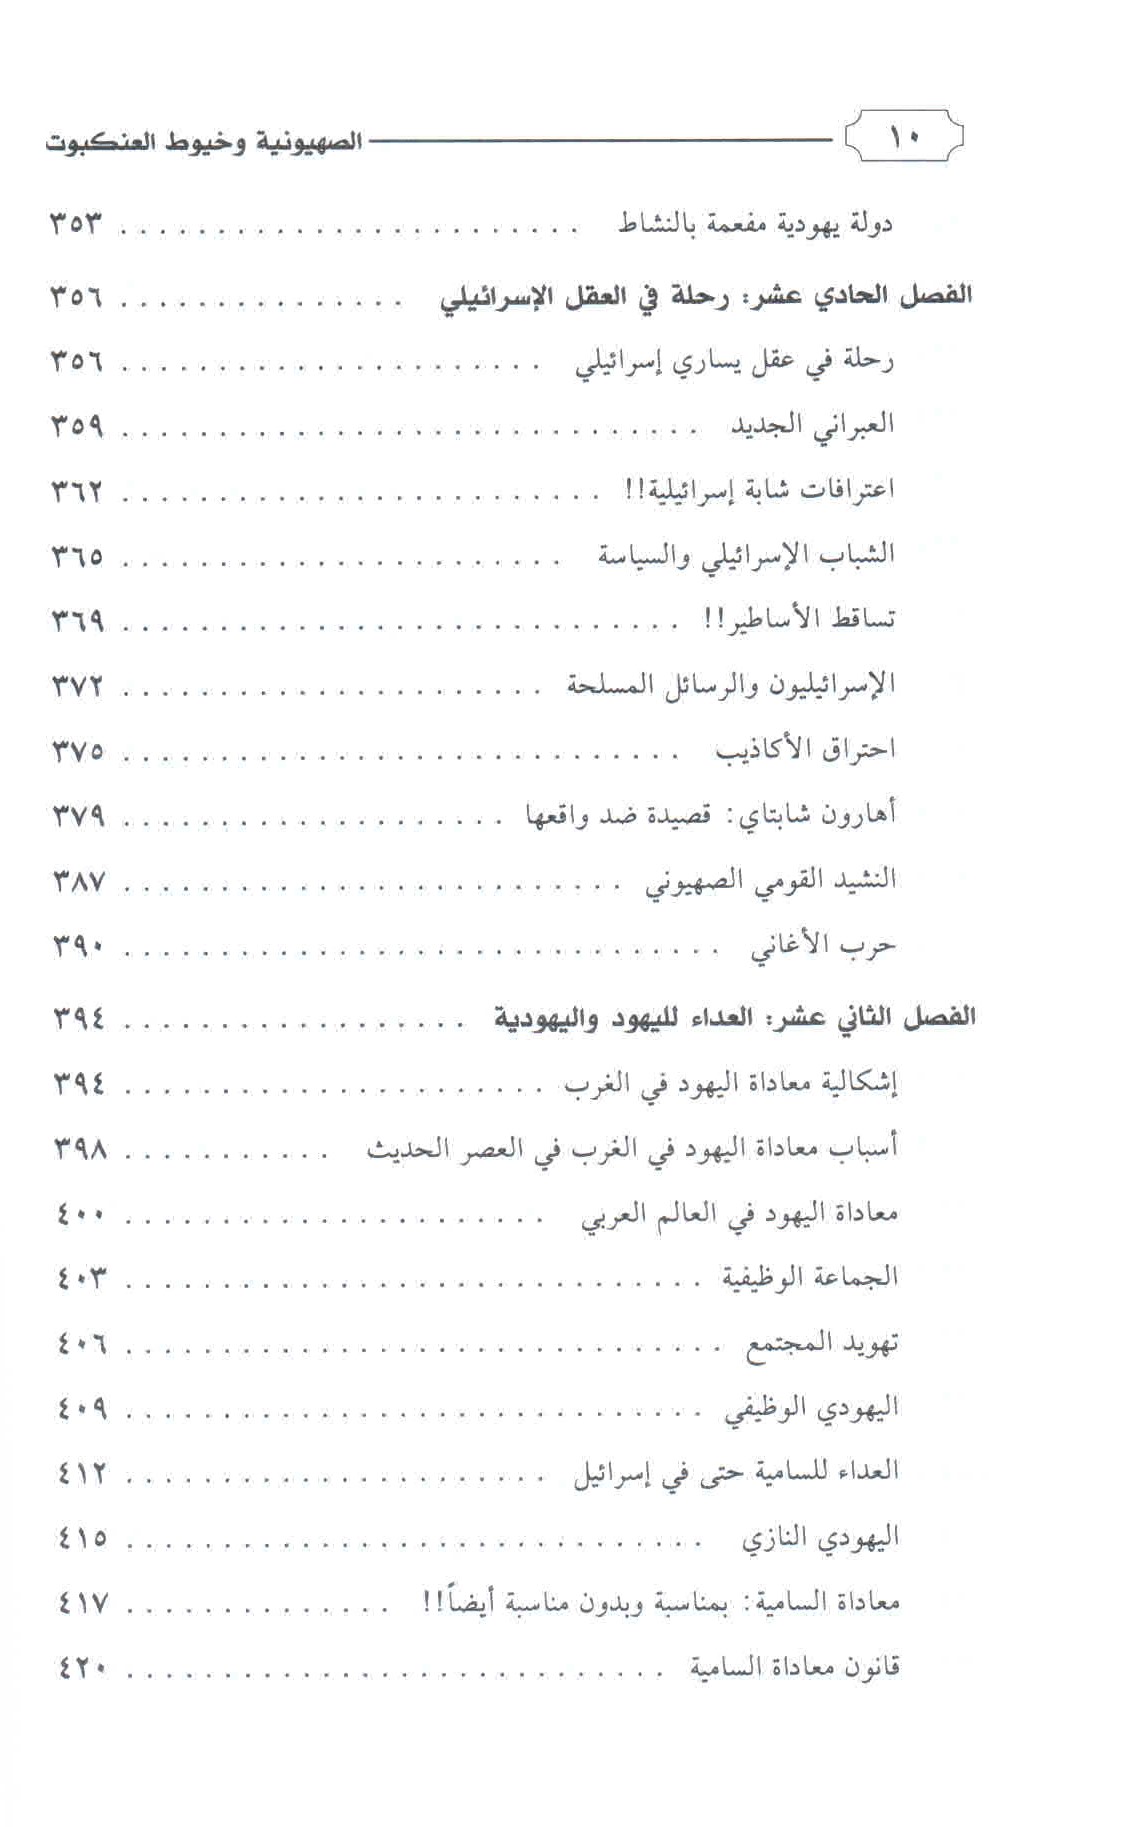 قائمة محتويات كتاب الصهيونية وخيوط العنكبوت ص. 10.